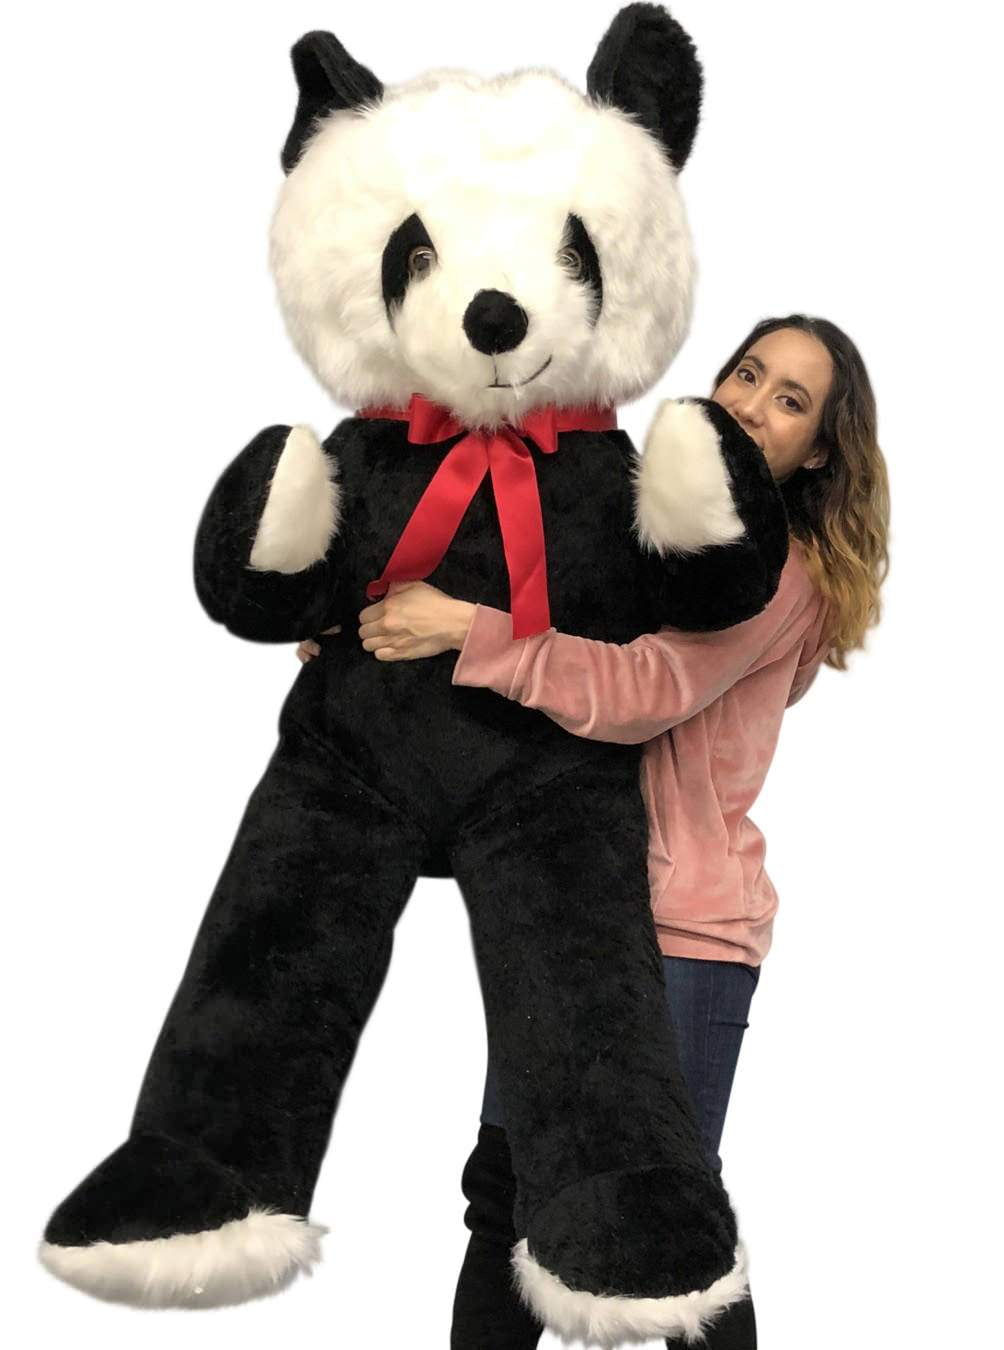 teddy bear with 6 feet